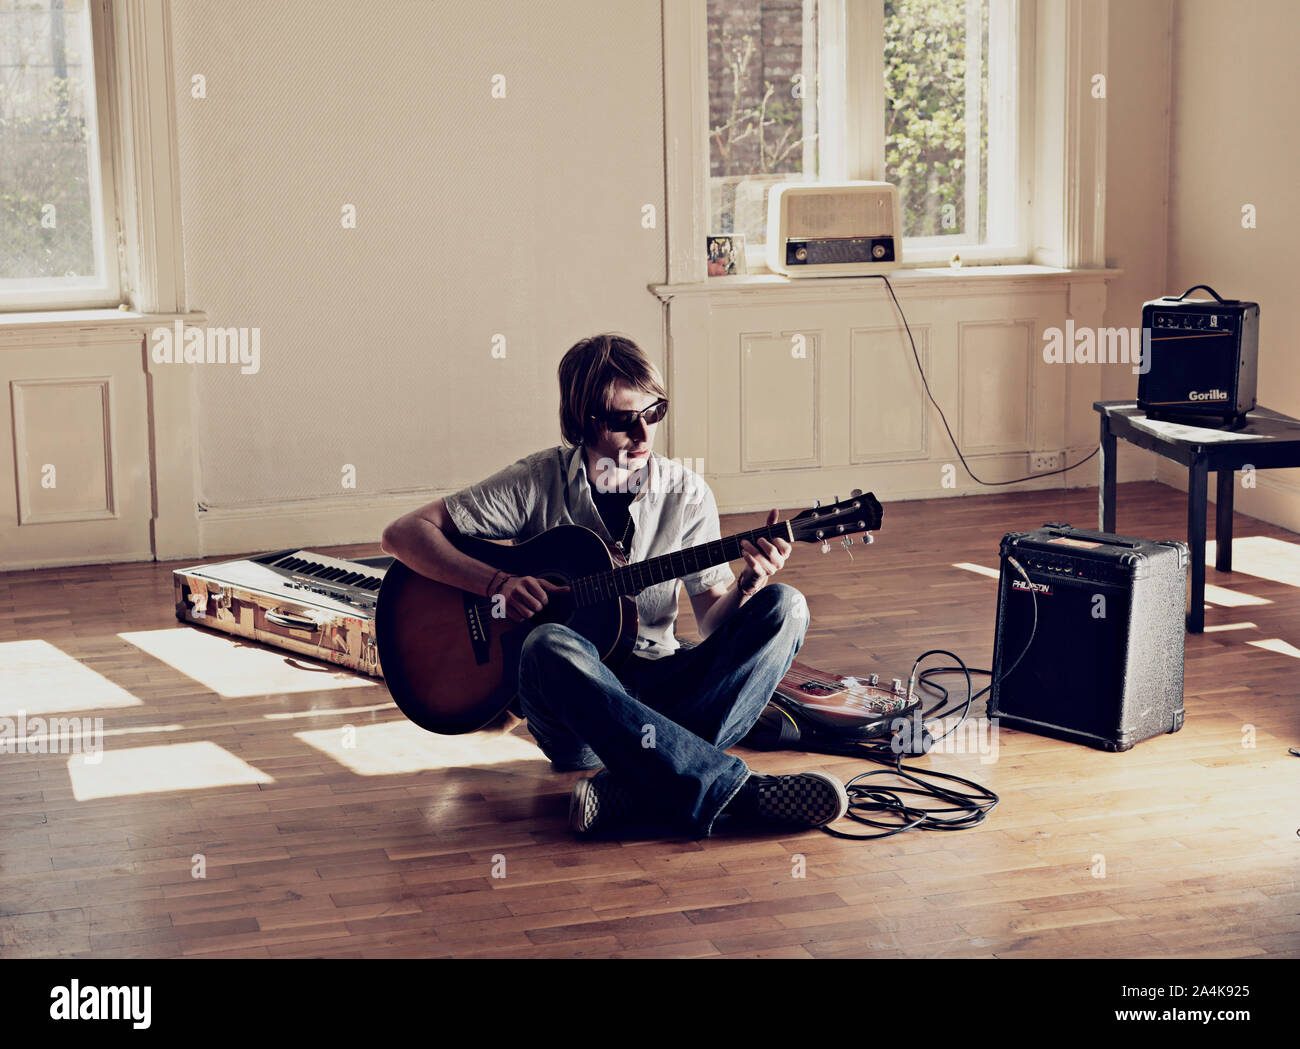 Giovane uomo seduto sul pavimento in parquet a suonare la chitarra Foto Stock